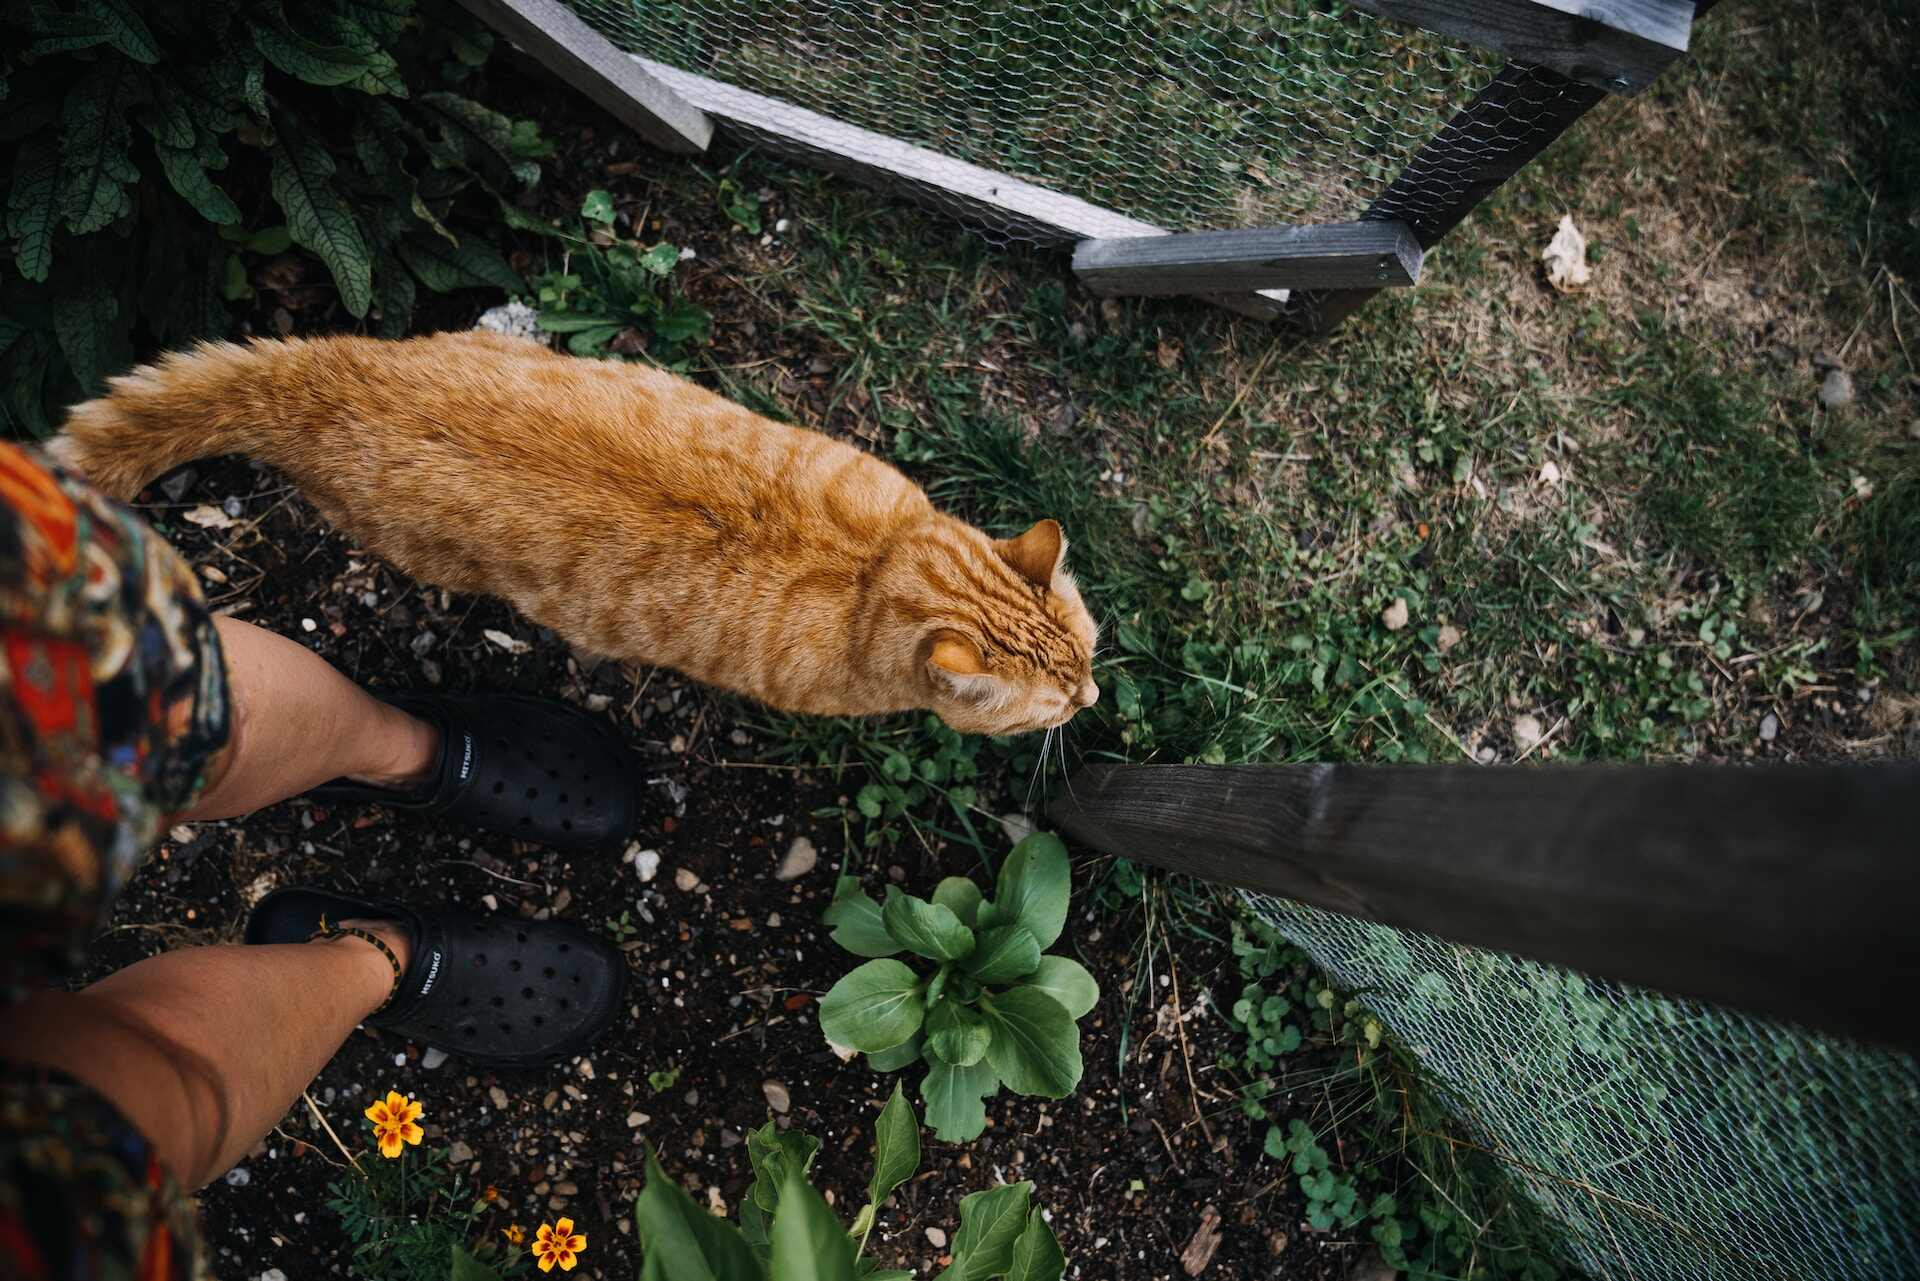 A brown cat exploring a garden next to a man